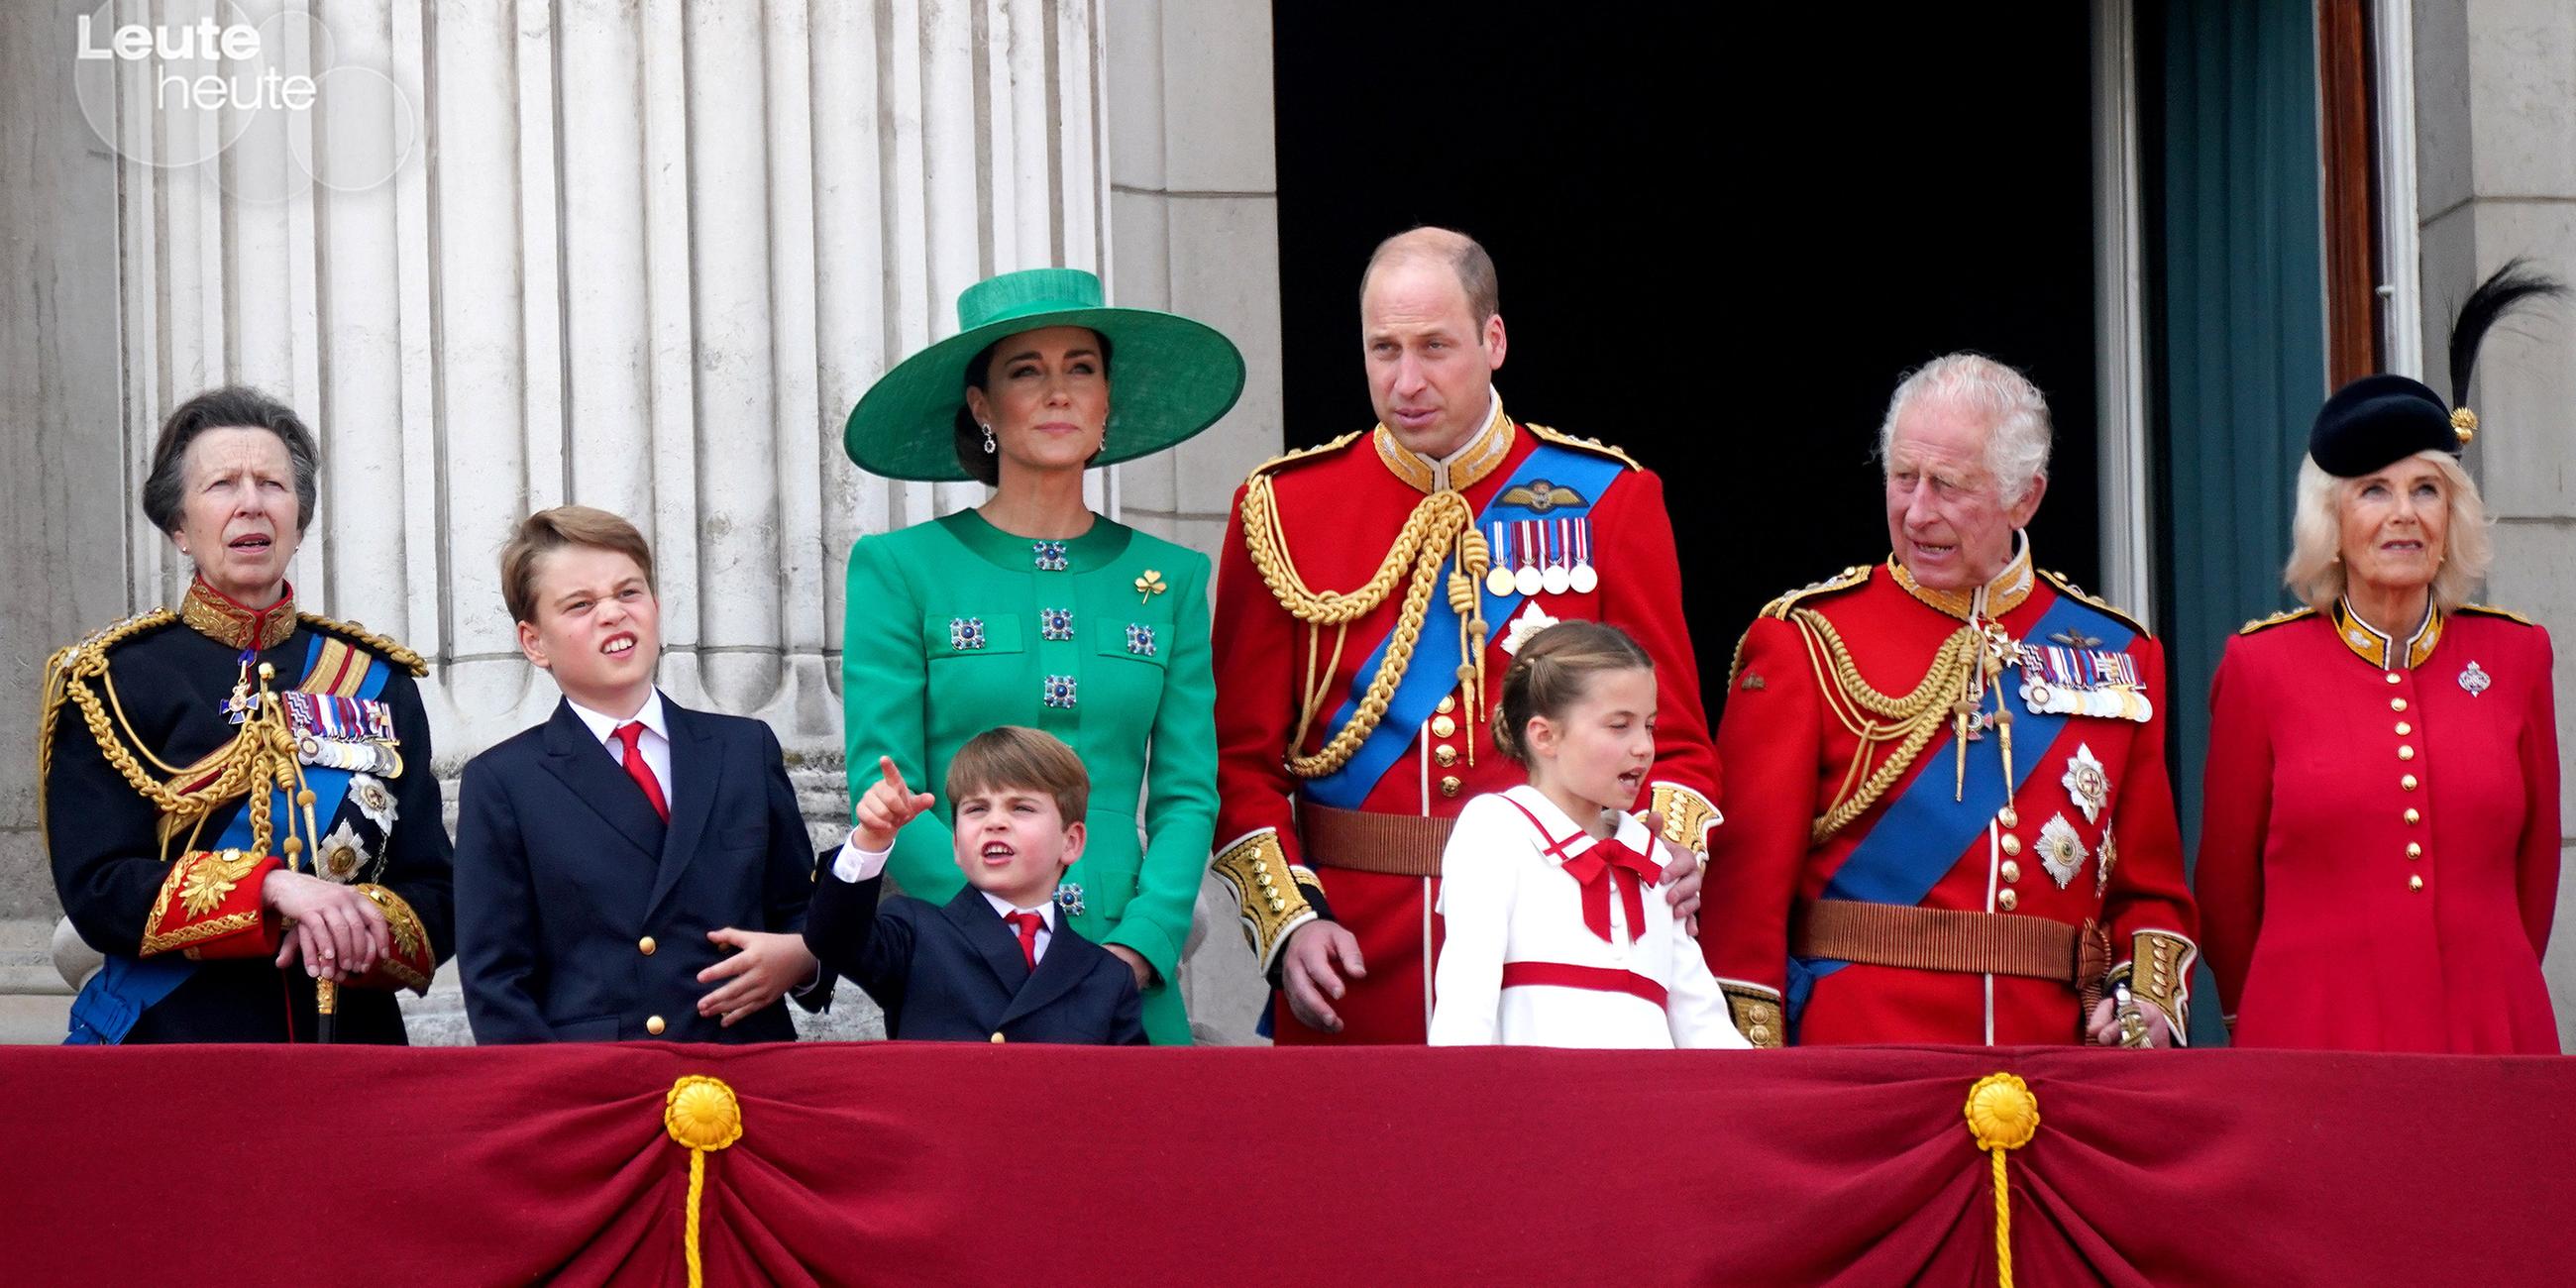 The Royal Family auf dem Balkon von Buckingham Palace bei der Zeremonie Trooping the colour